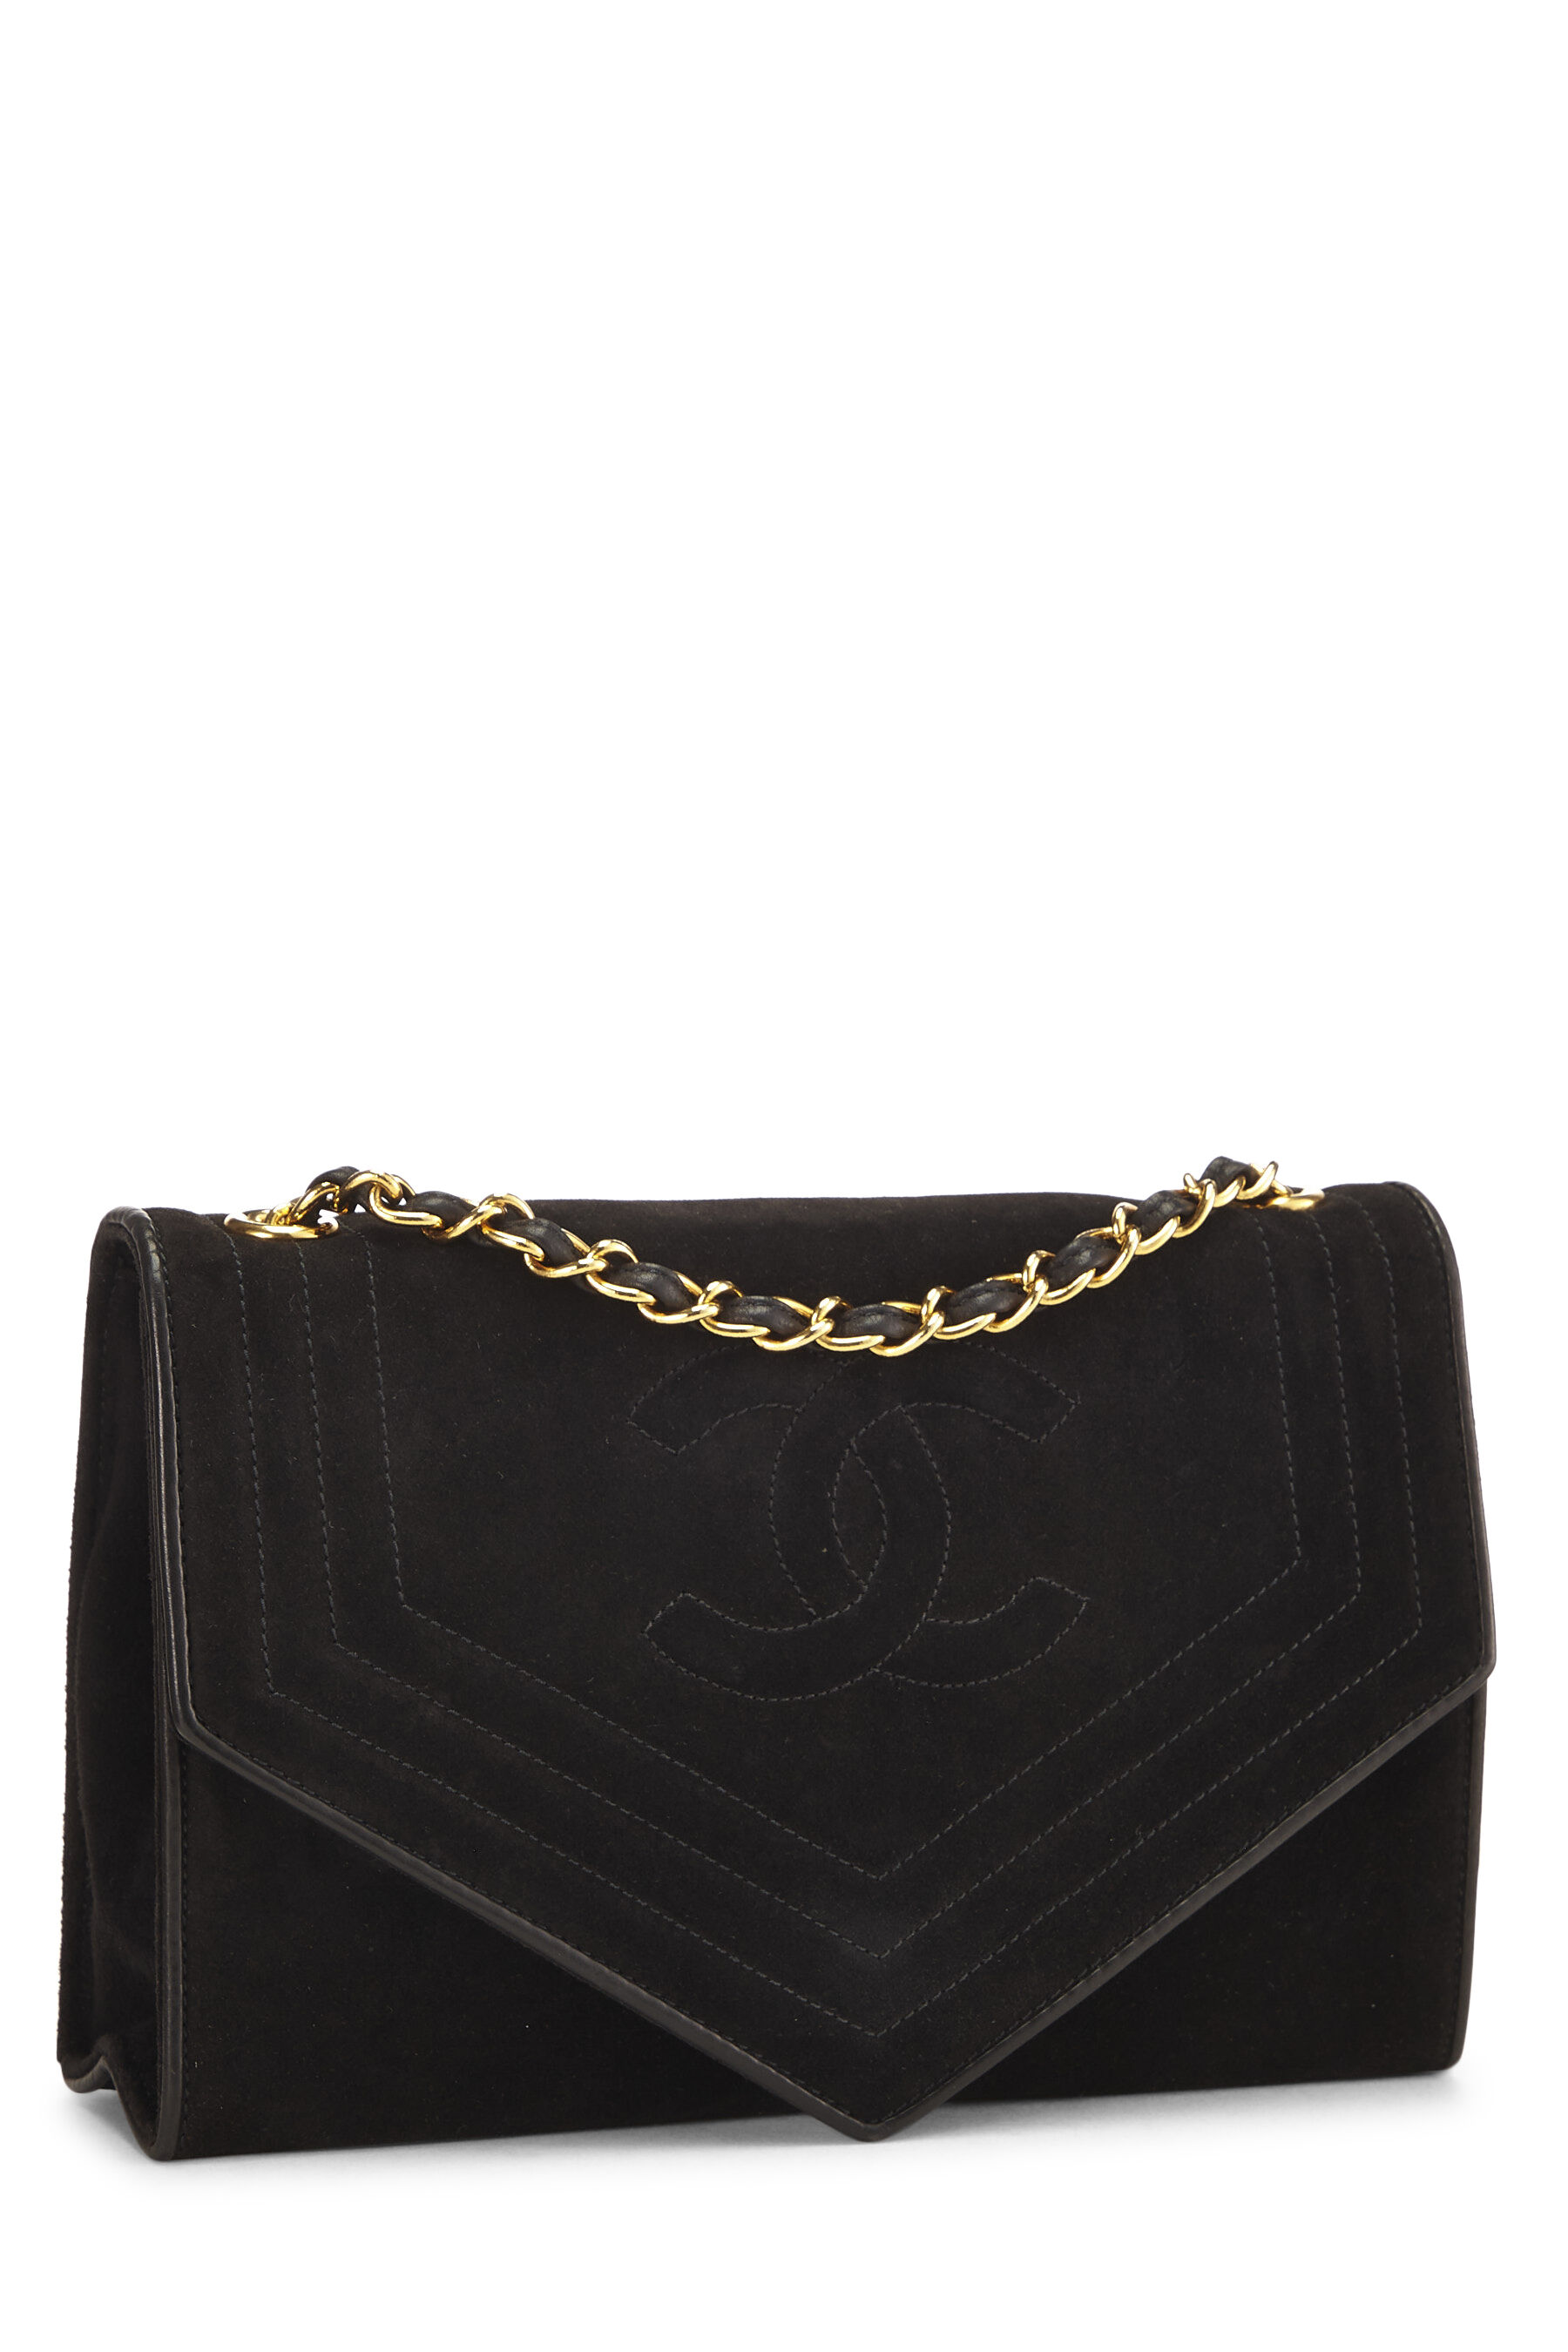 Chanel Black Suede Triborder Envelope Flap Shoulder Bag Small